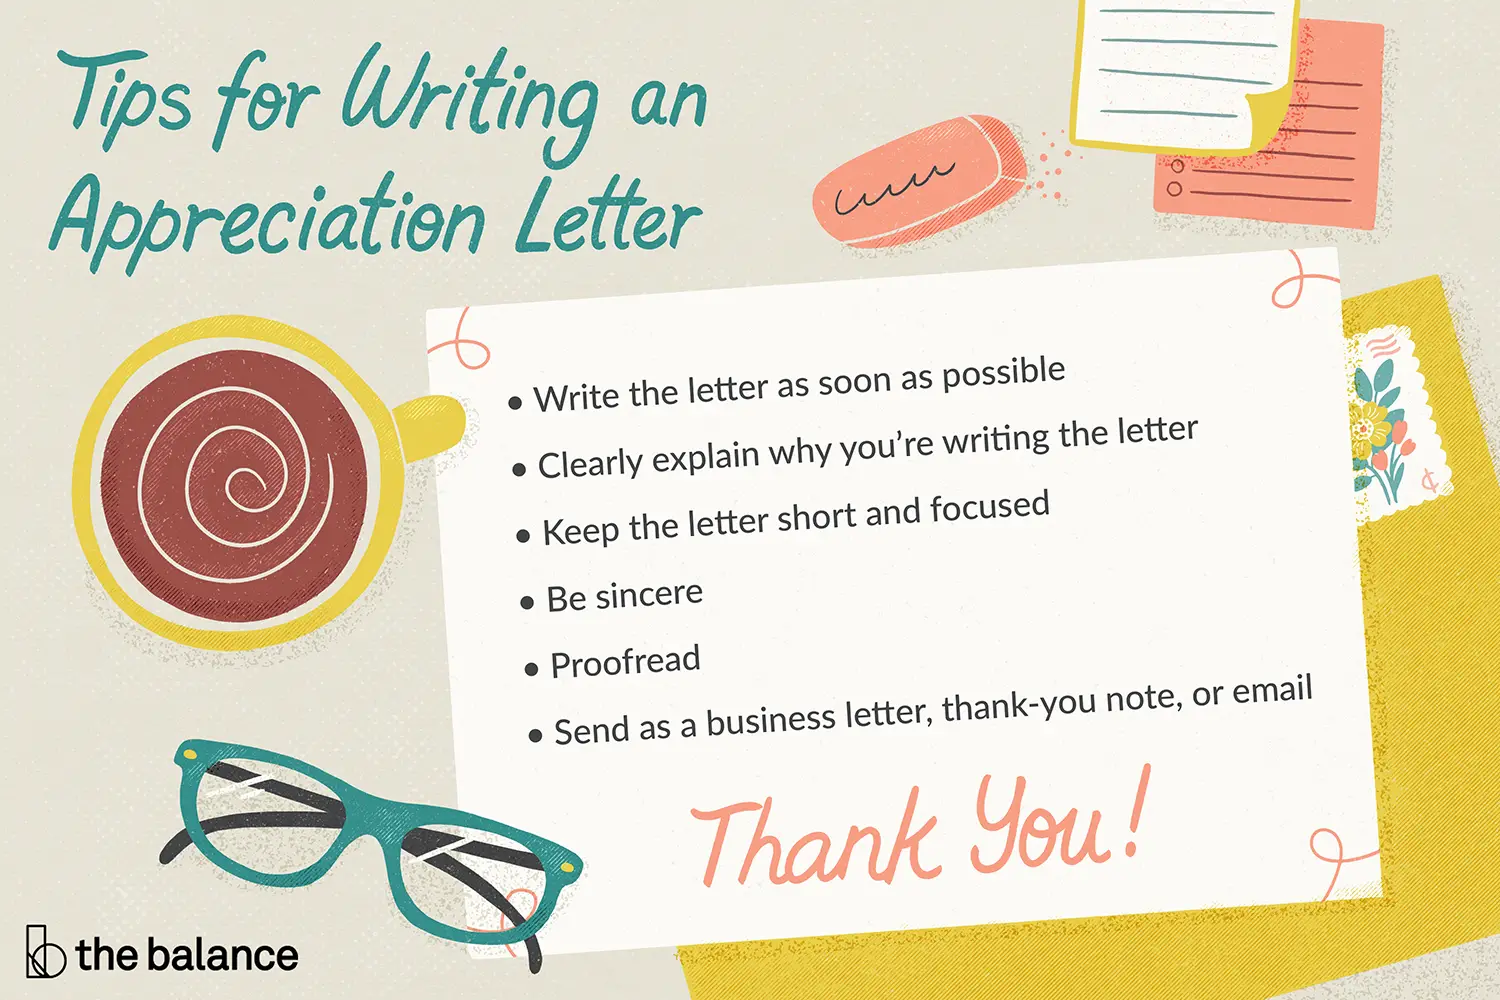 En este momento estás viendo Ejemplos de cartas de agradecimiento y consejos para escribir